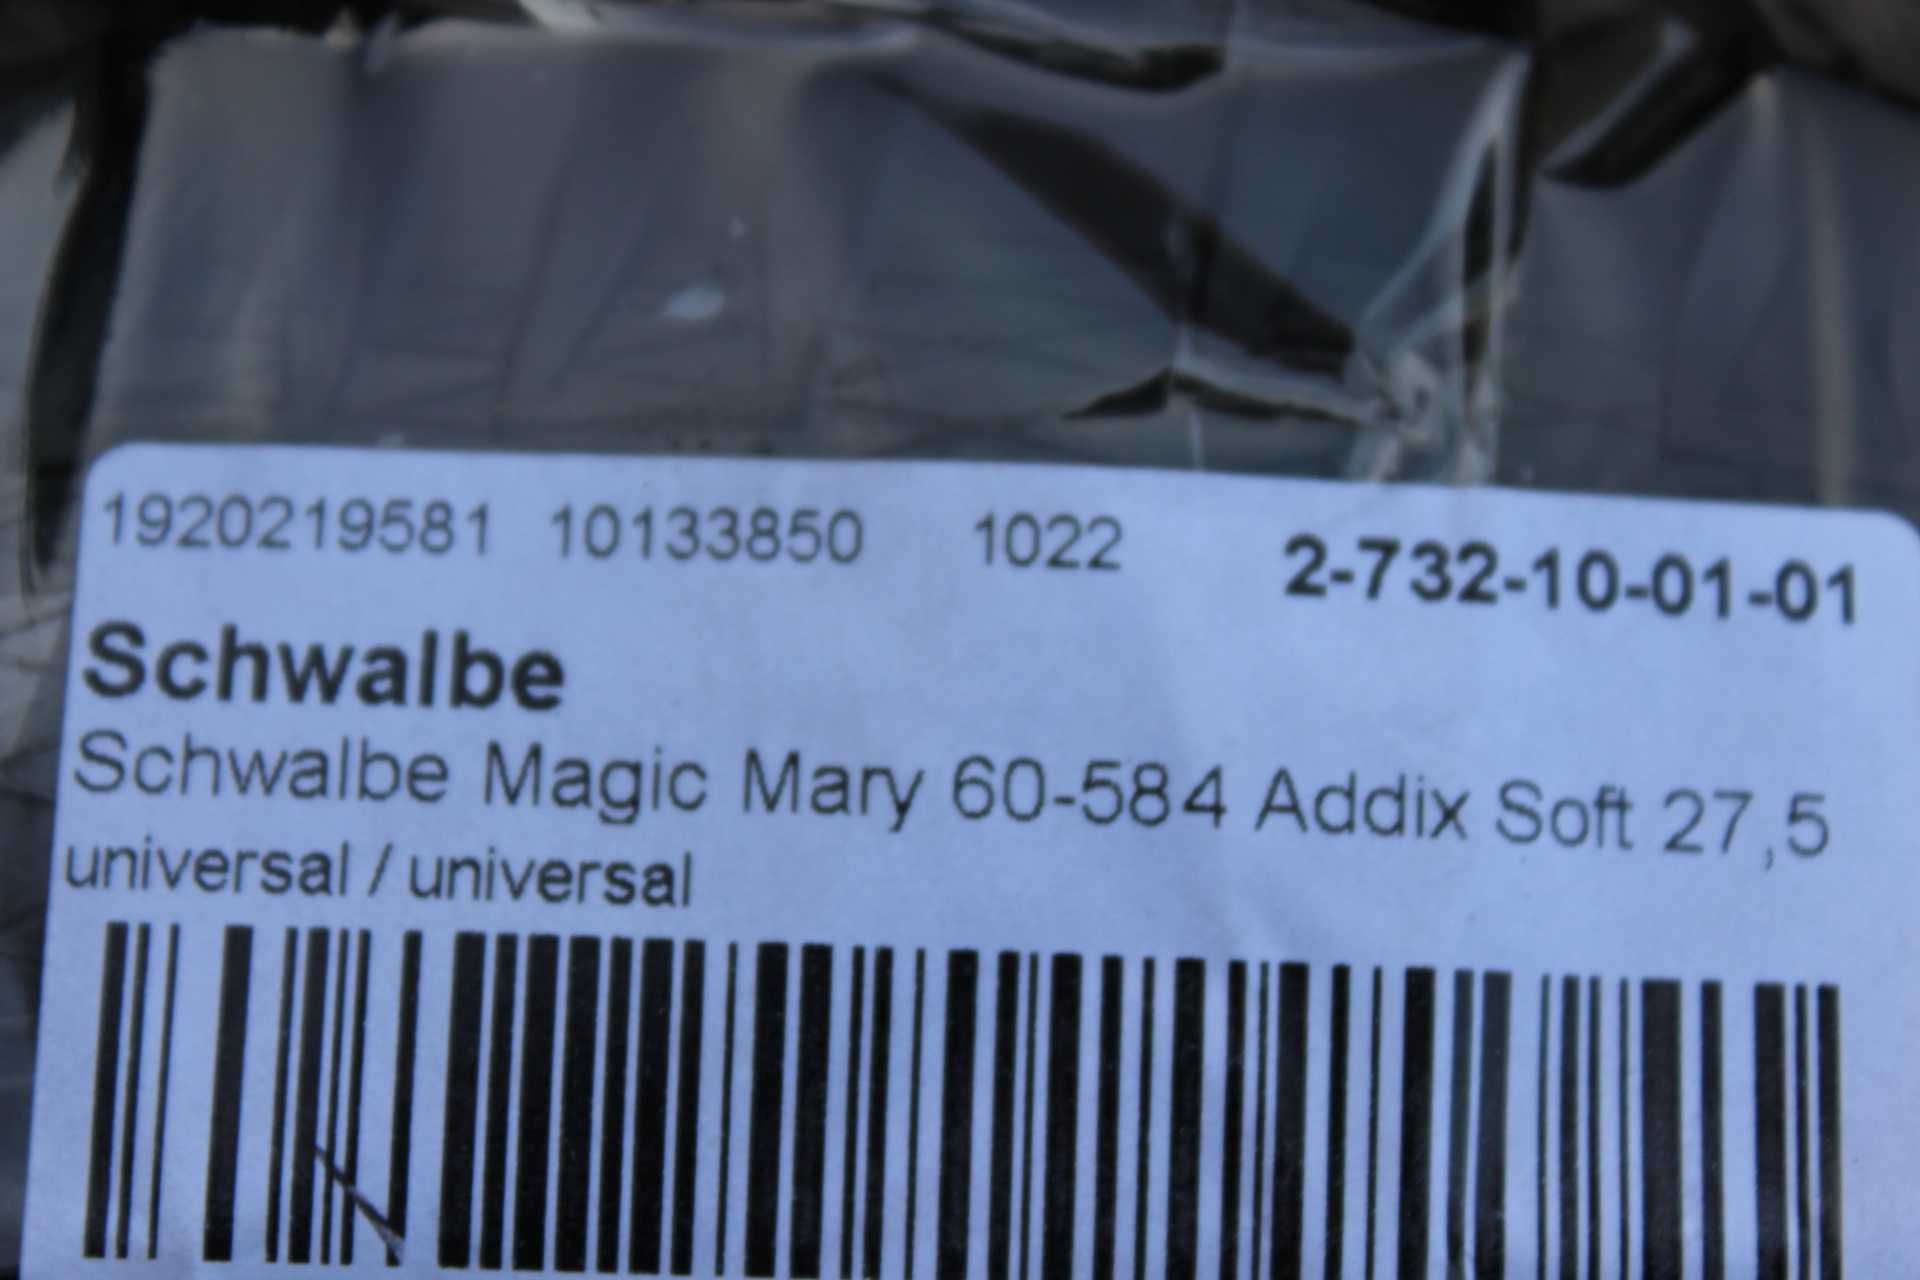 Schwalbe Magic Mary Evo 27.5x2.35 Addix Soft - Super Trail TL-Easy